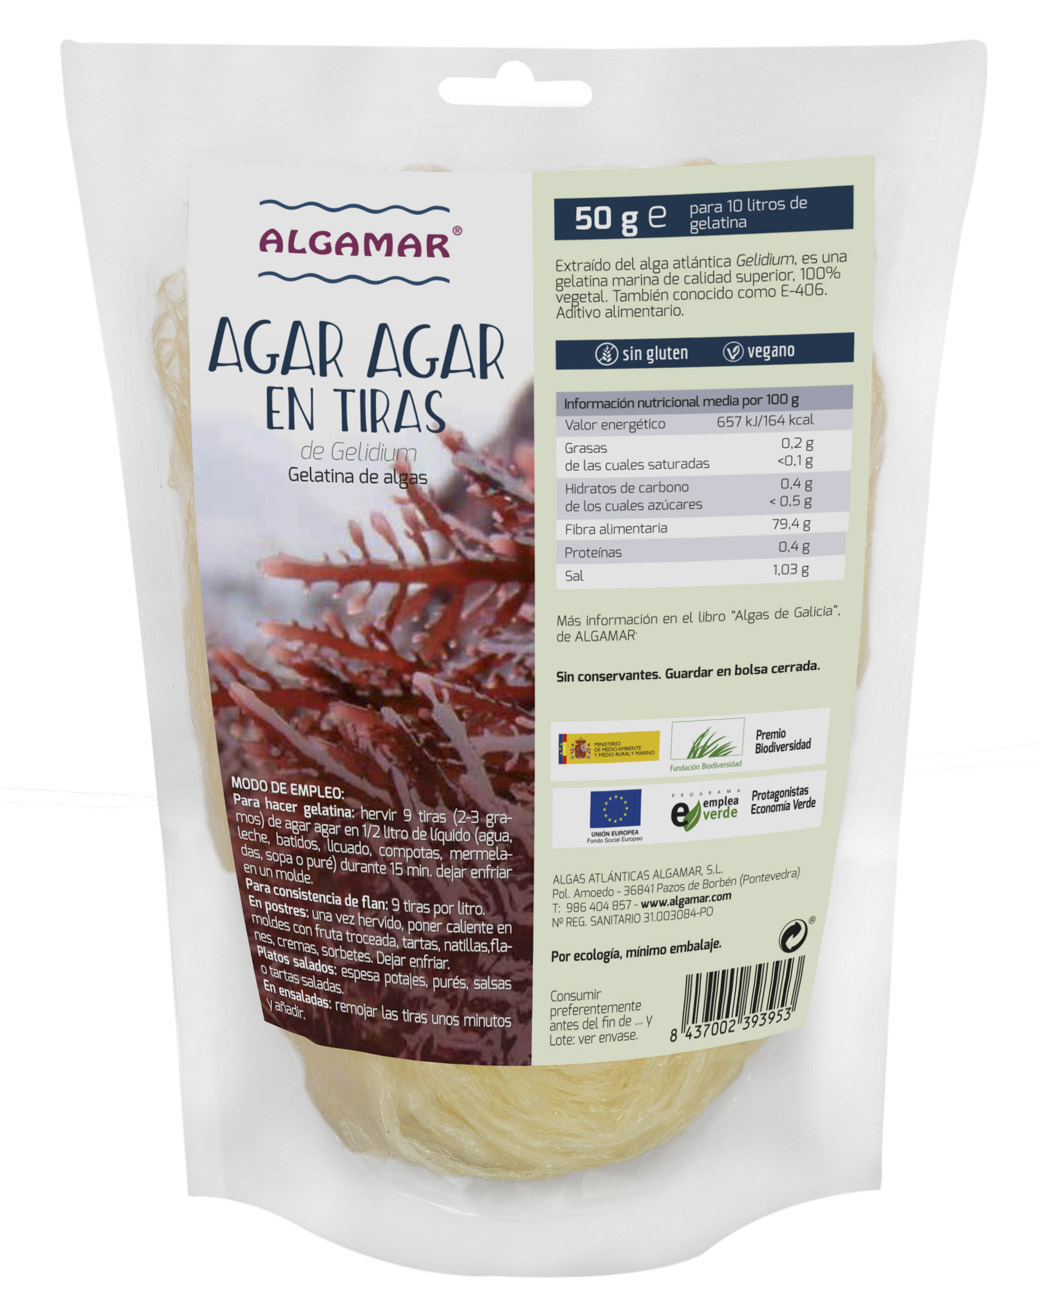 Imagen del producto Agar-Agar en Tiras de Laboratorios Algamar ( ALGAALIMAGAR )